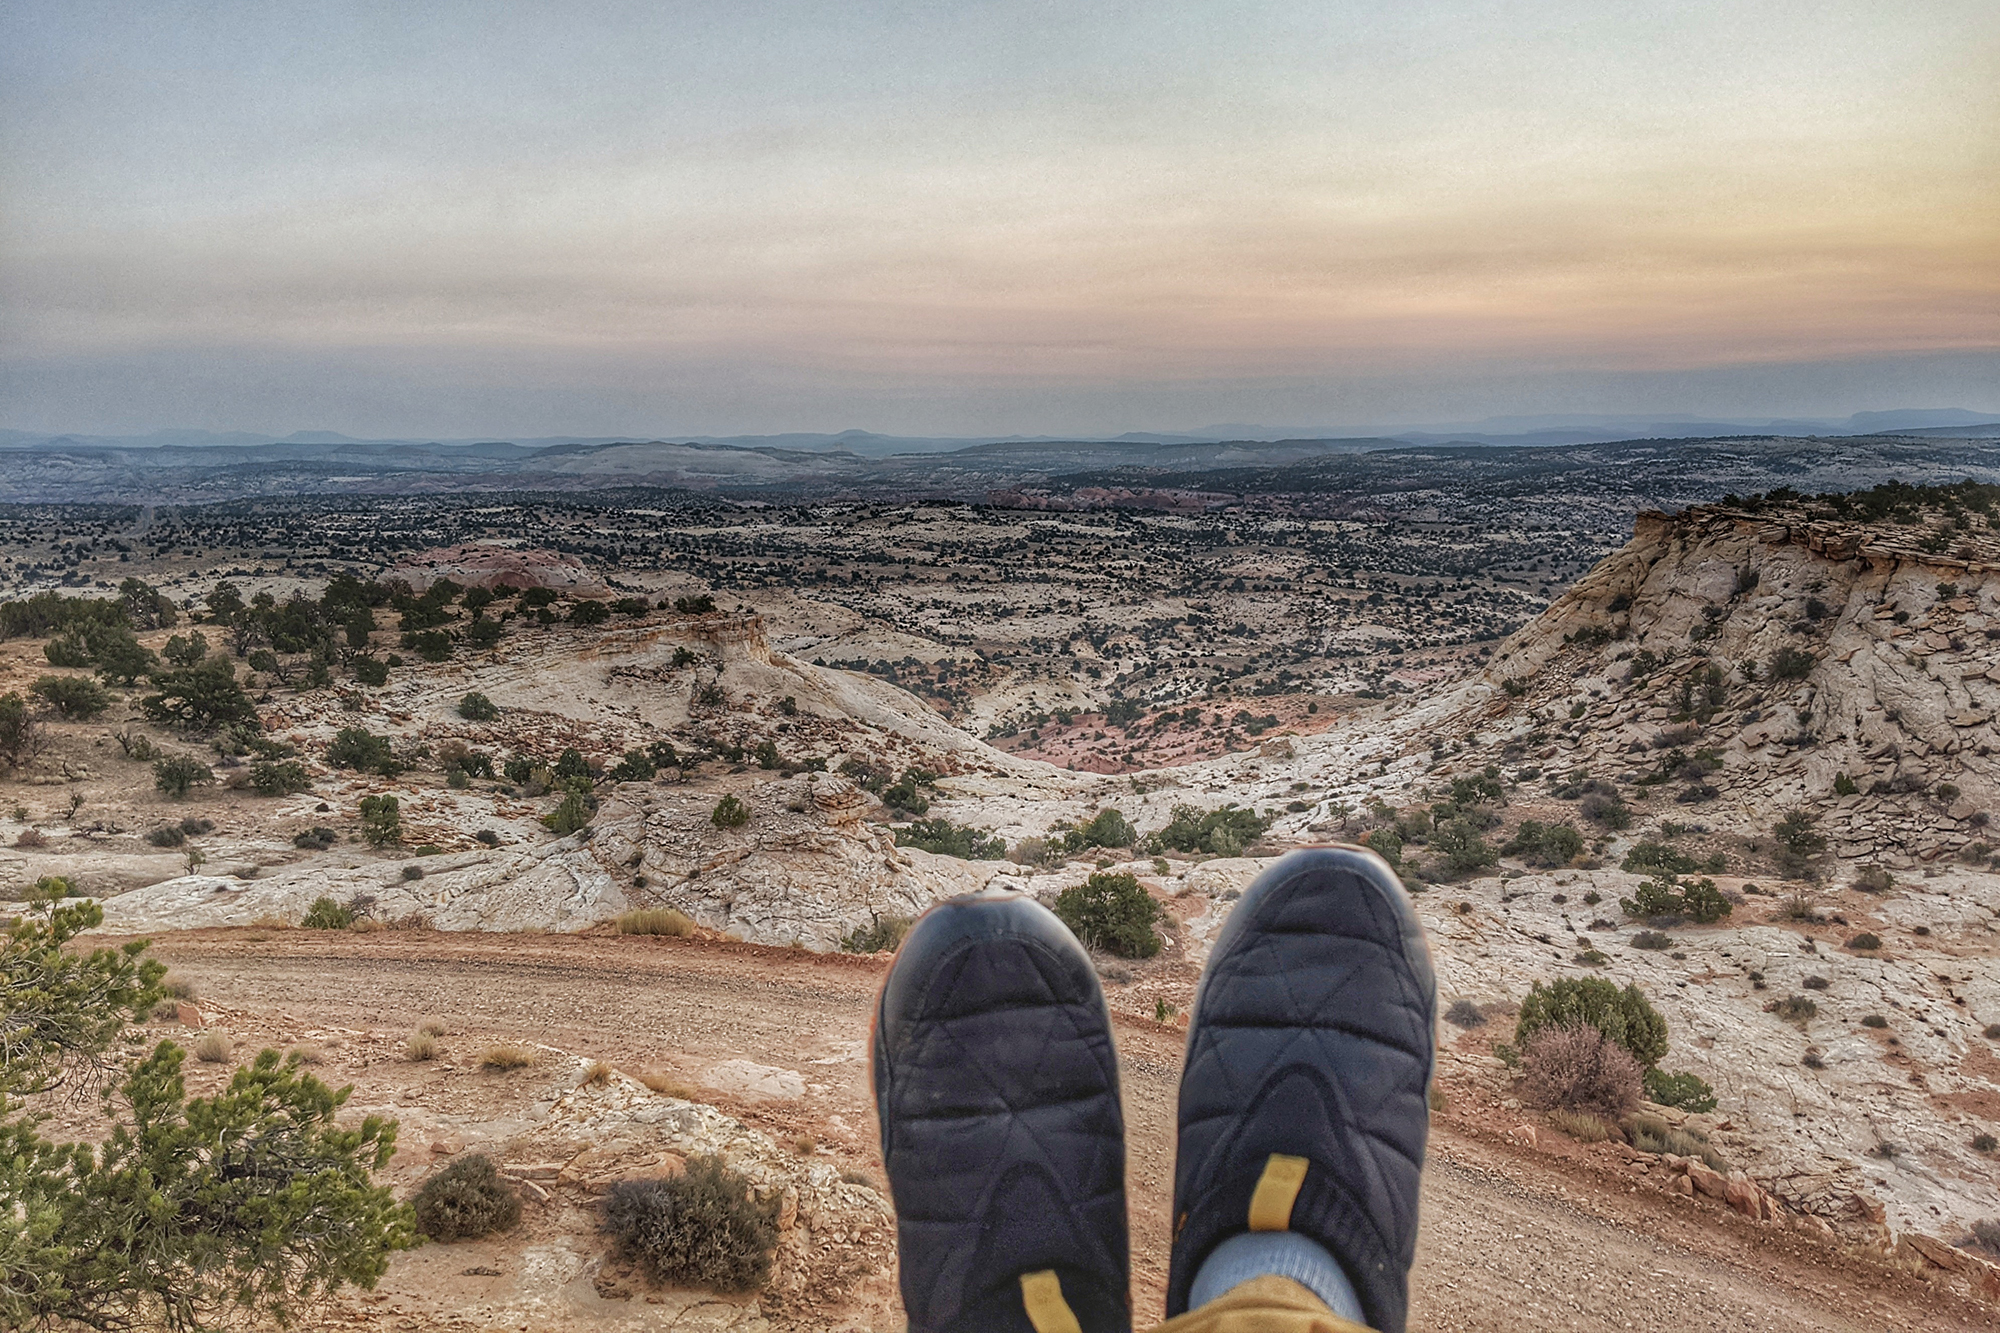 shoes in front of vast desert landscape